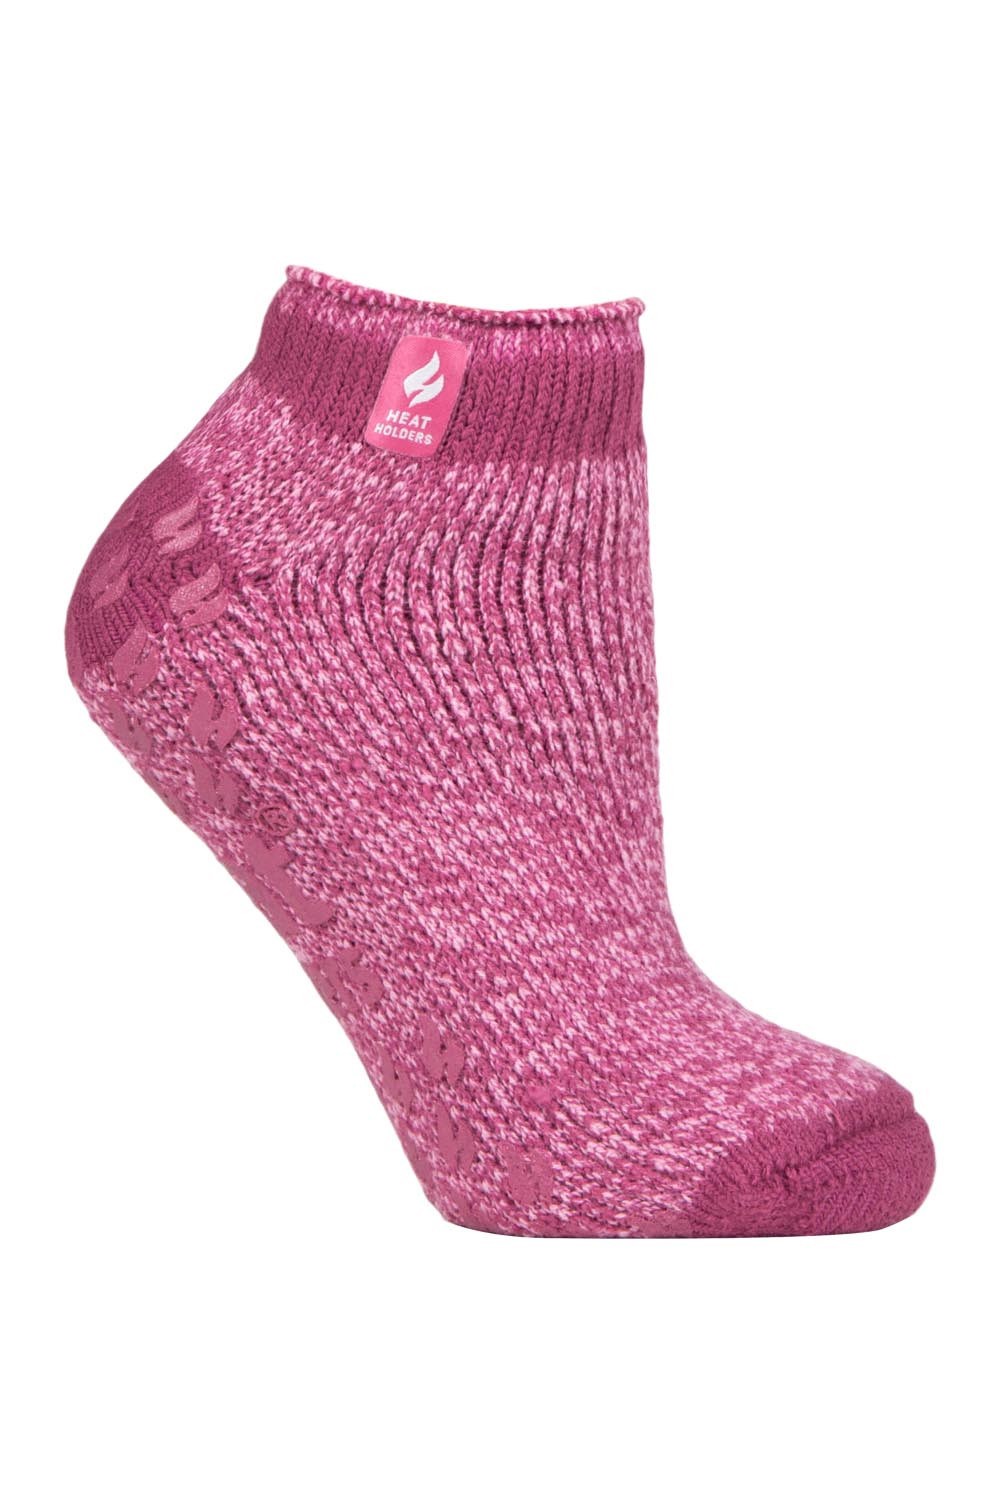 Womens Low Cut Ankle Slipper Socks -